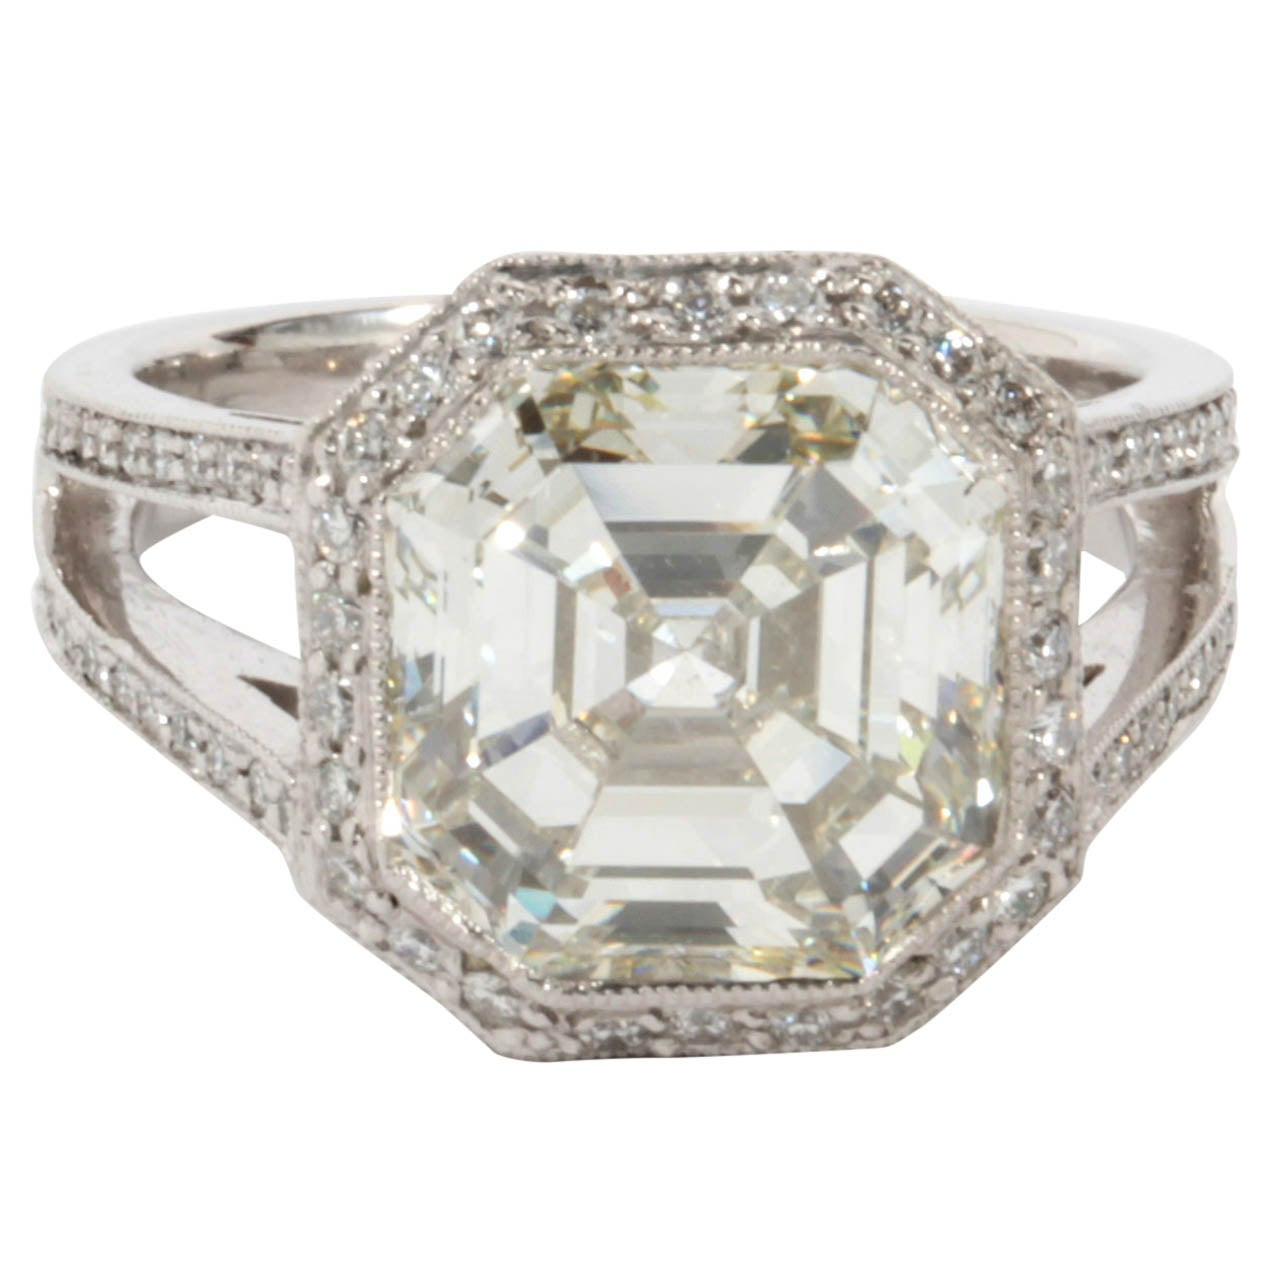 Asscher Cut Diamond Engagement Rings
 Certified 5 28 carat Asscher cut Diamond Engagement ring